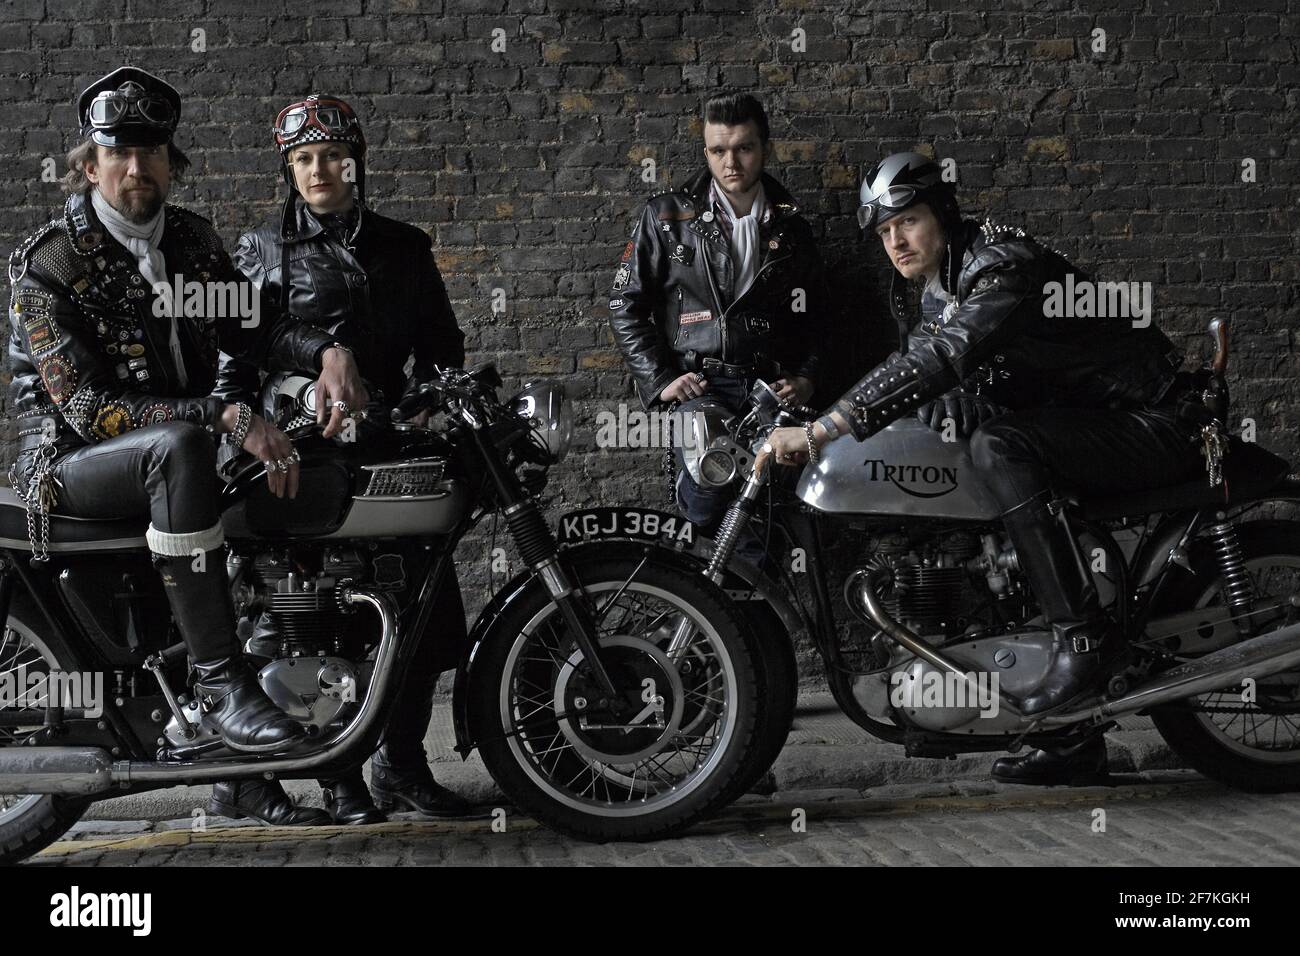 Rocker Gang posiert mit britischen Klassiker Triumph, Triton Motorräder. Rocker auf klassischen Cafe Racer-Motorrädern in London, Großbritannien. Stockfoto